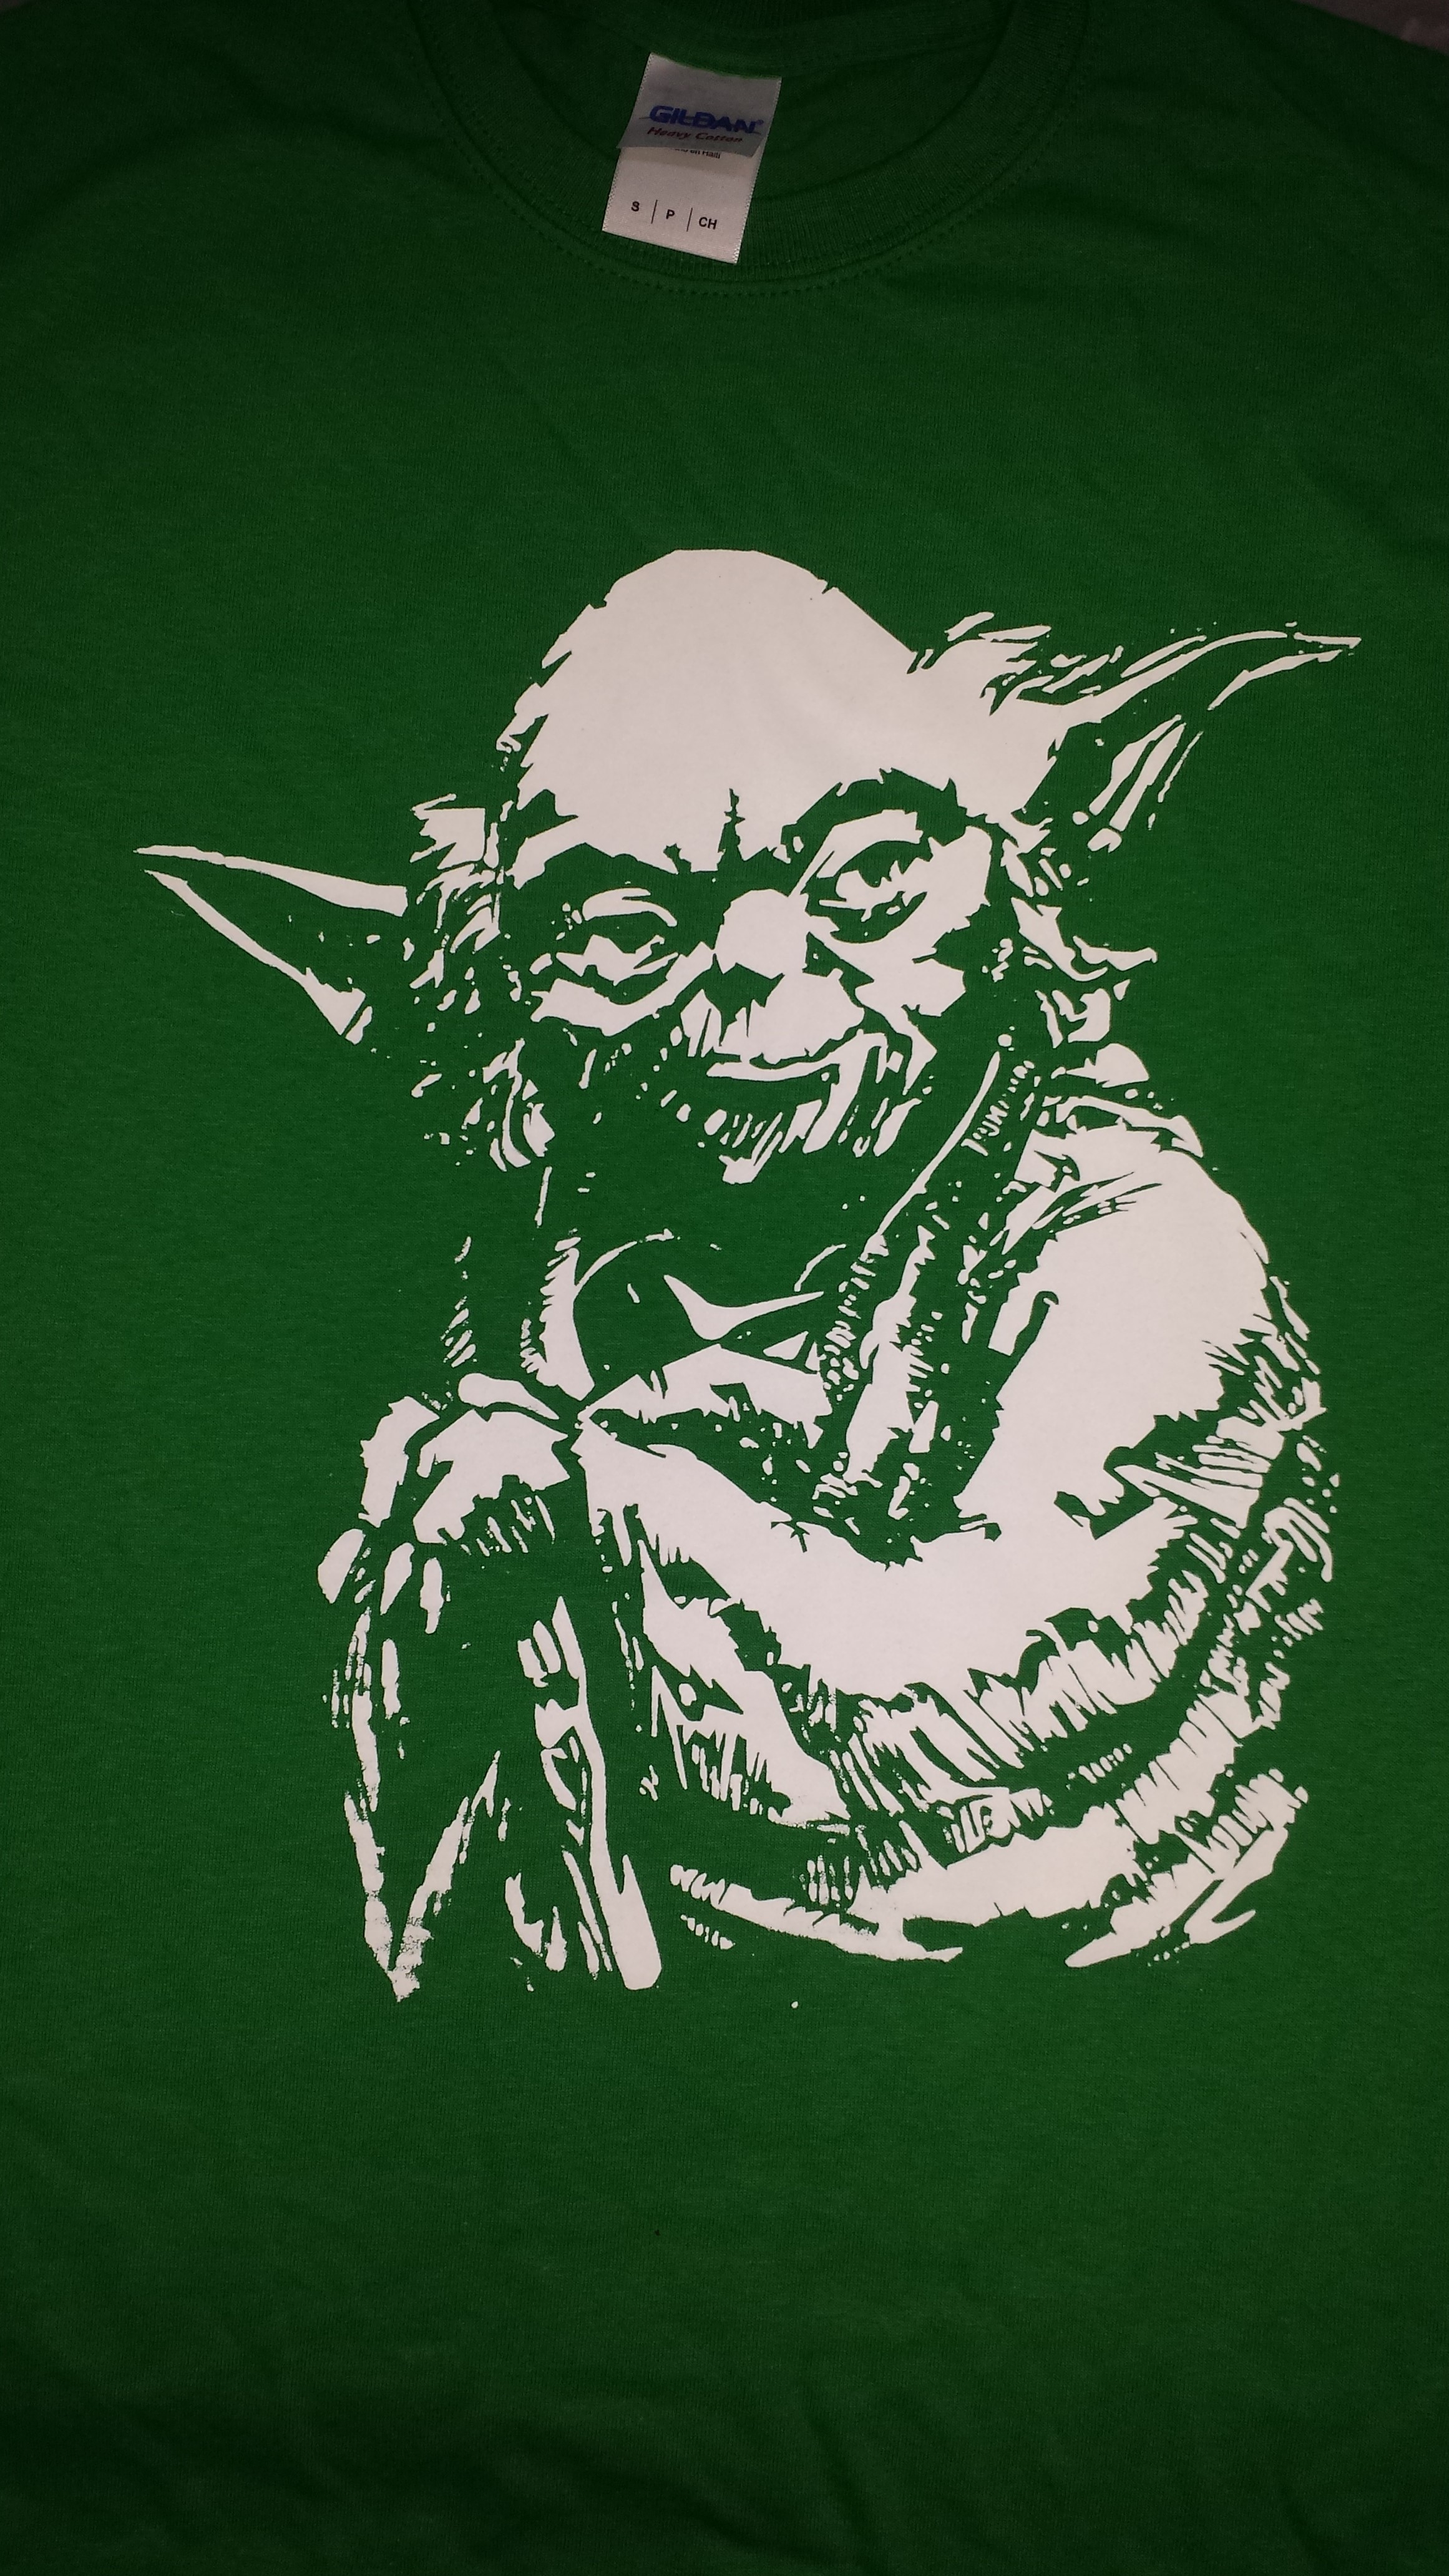 Star Wars Yoda Master